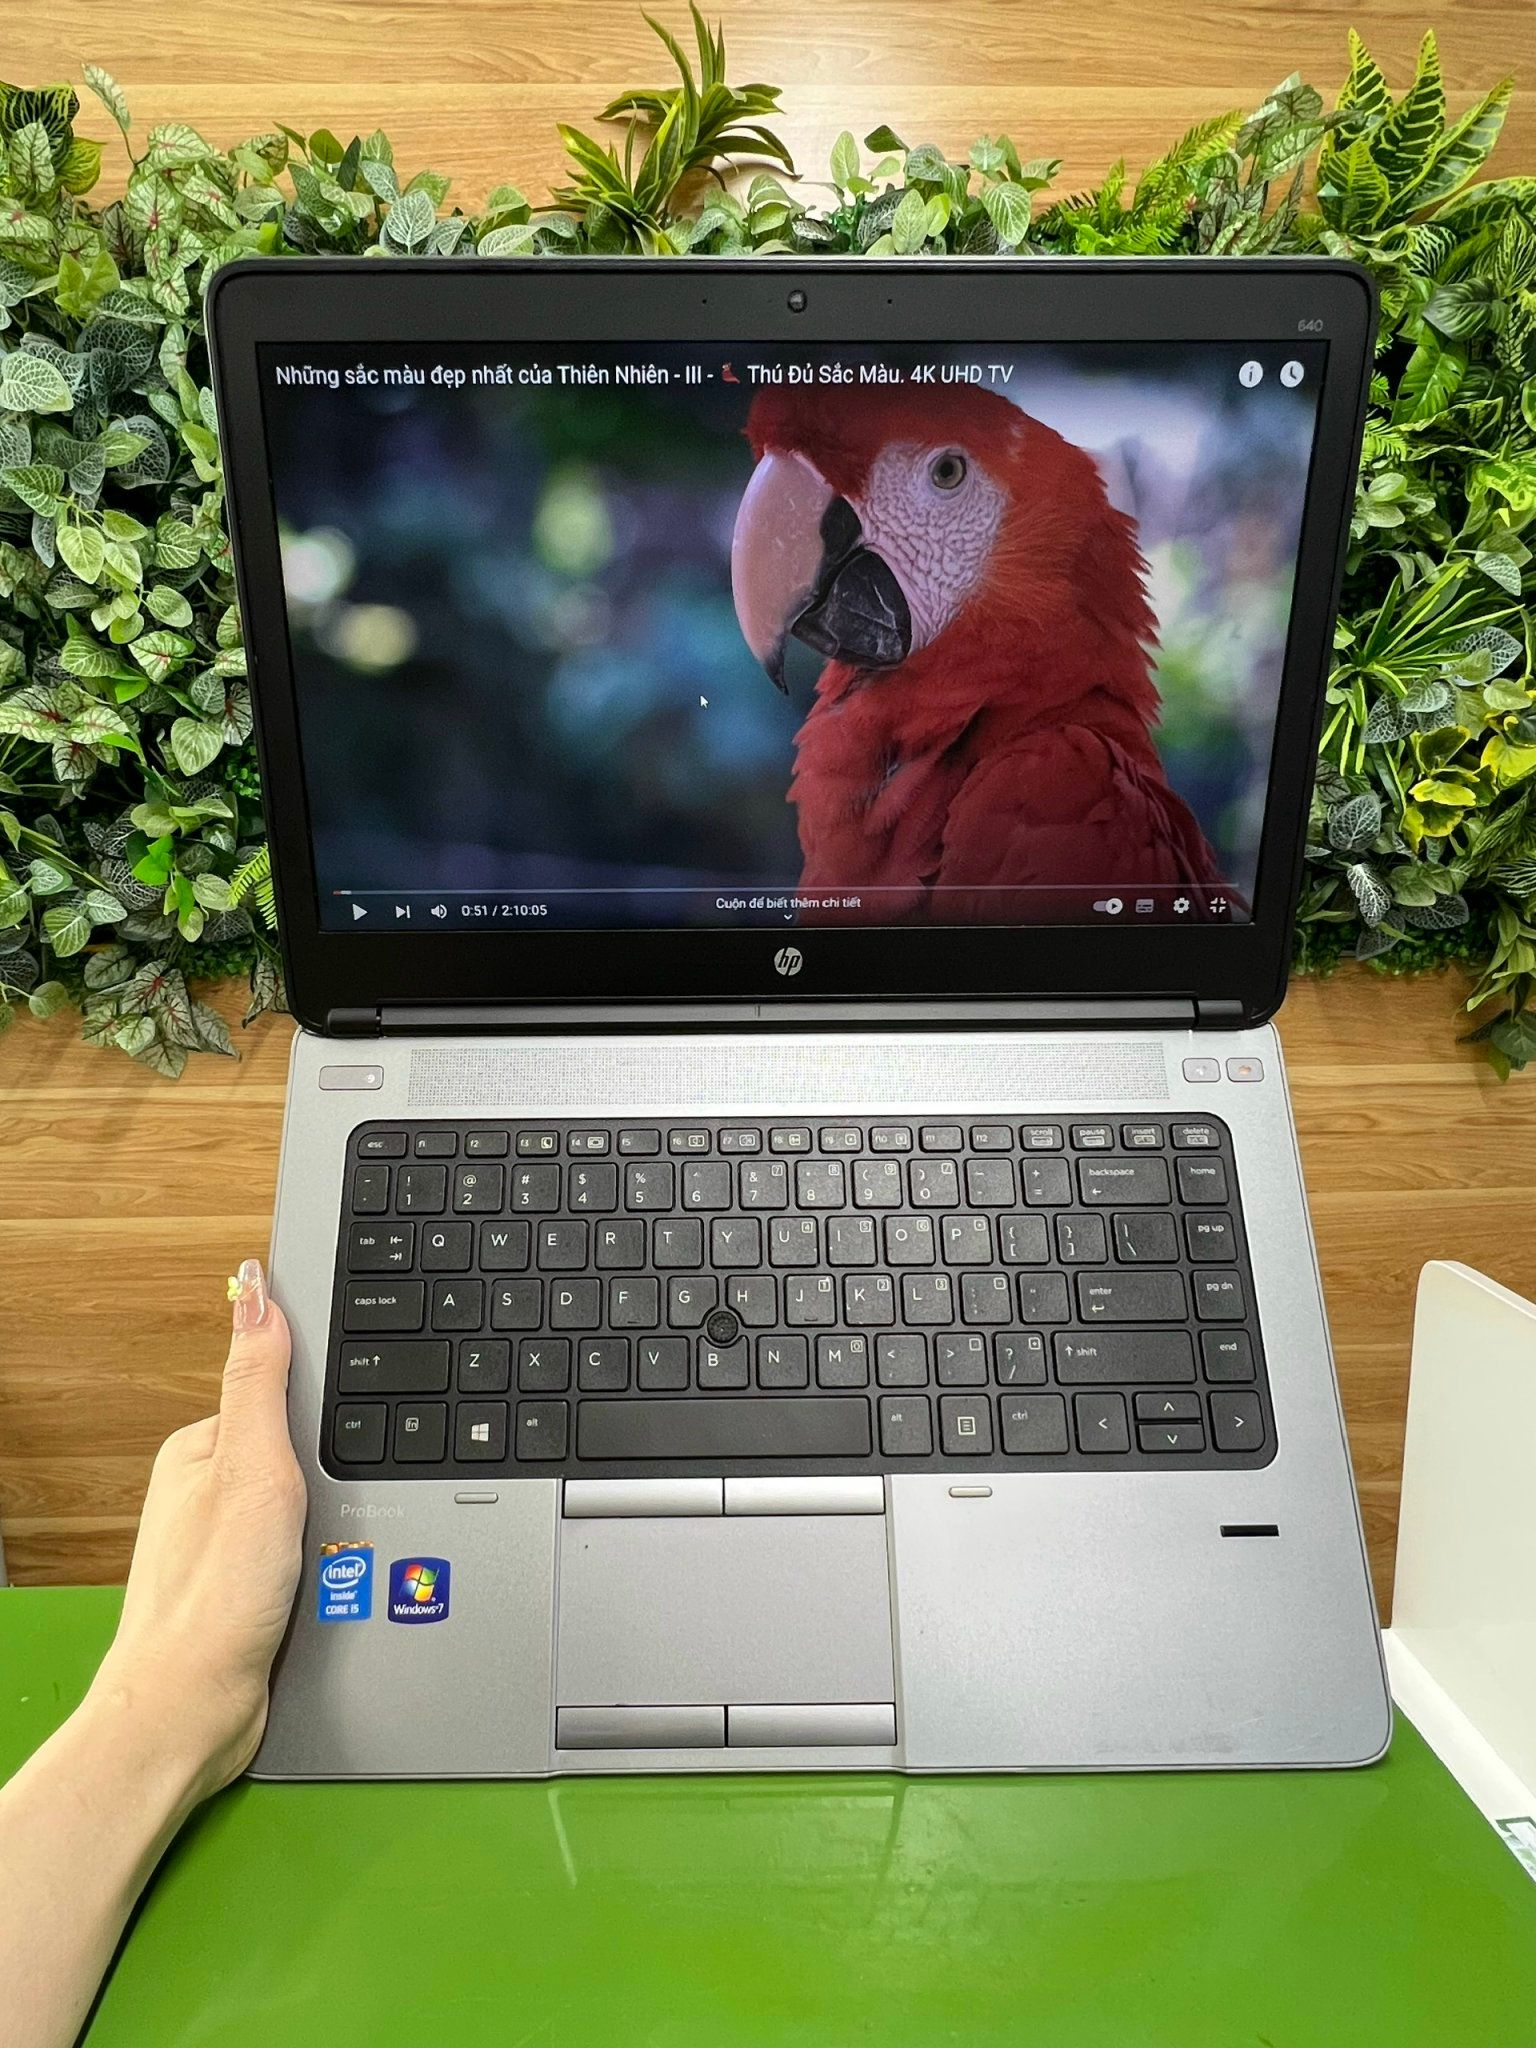  <b>Laptop Cũ HP Probook 640G1</b> <br> Core i5-4200M/4GB/SSD128GB, 14